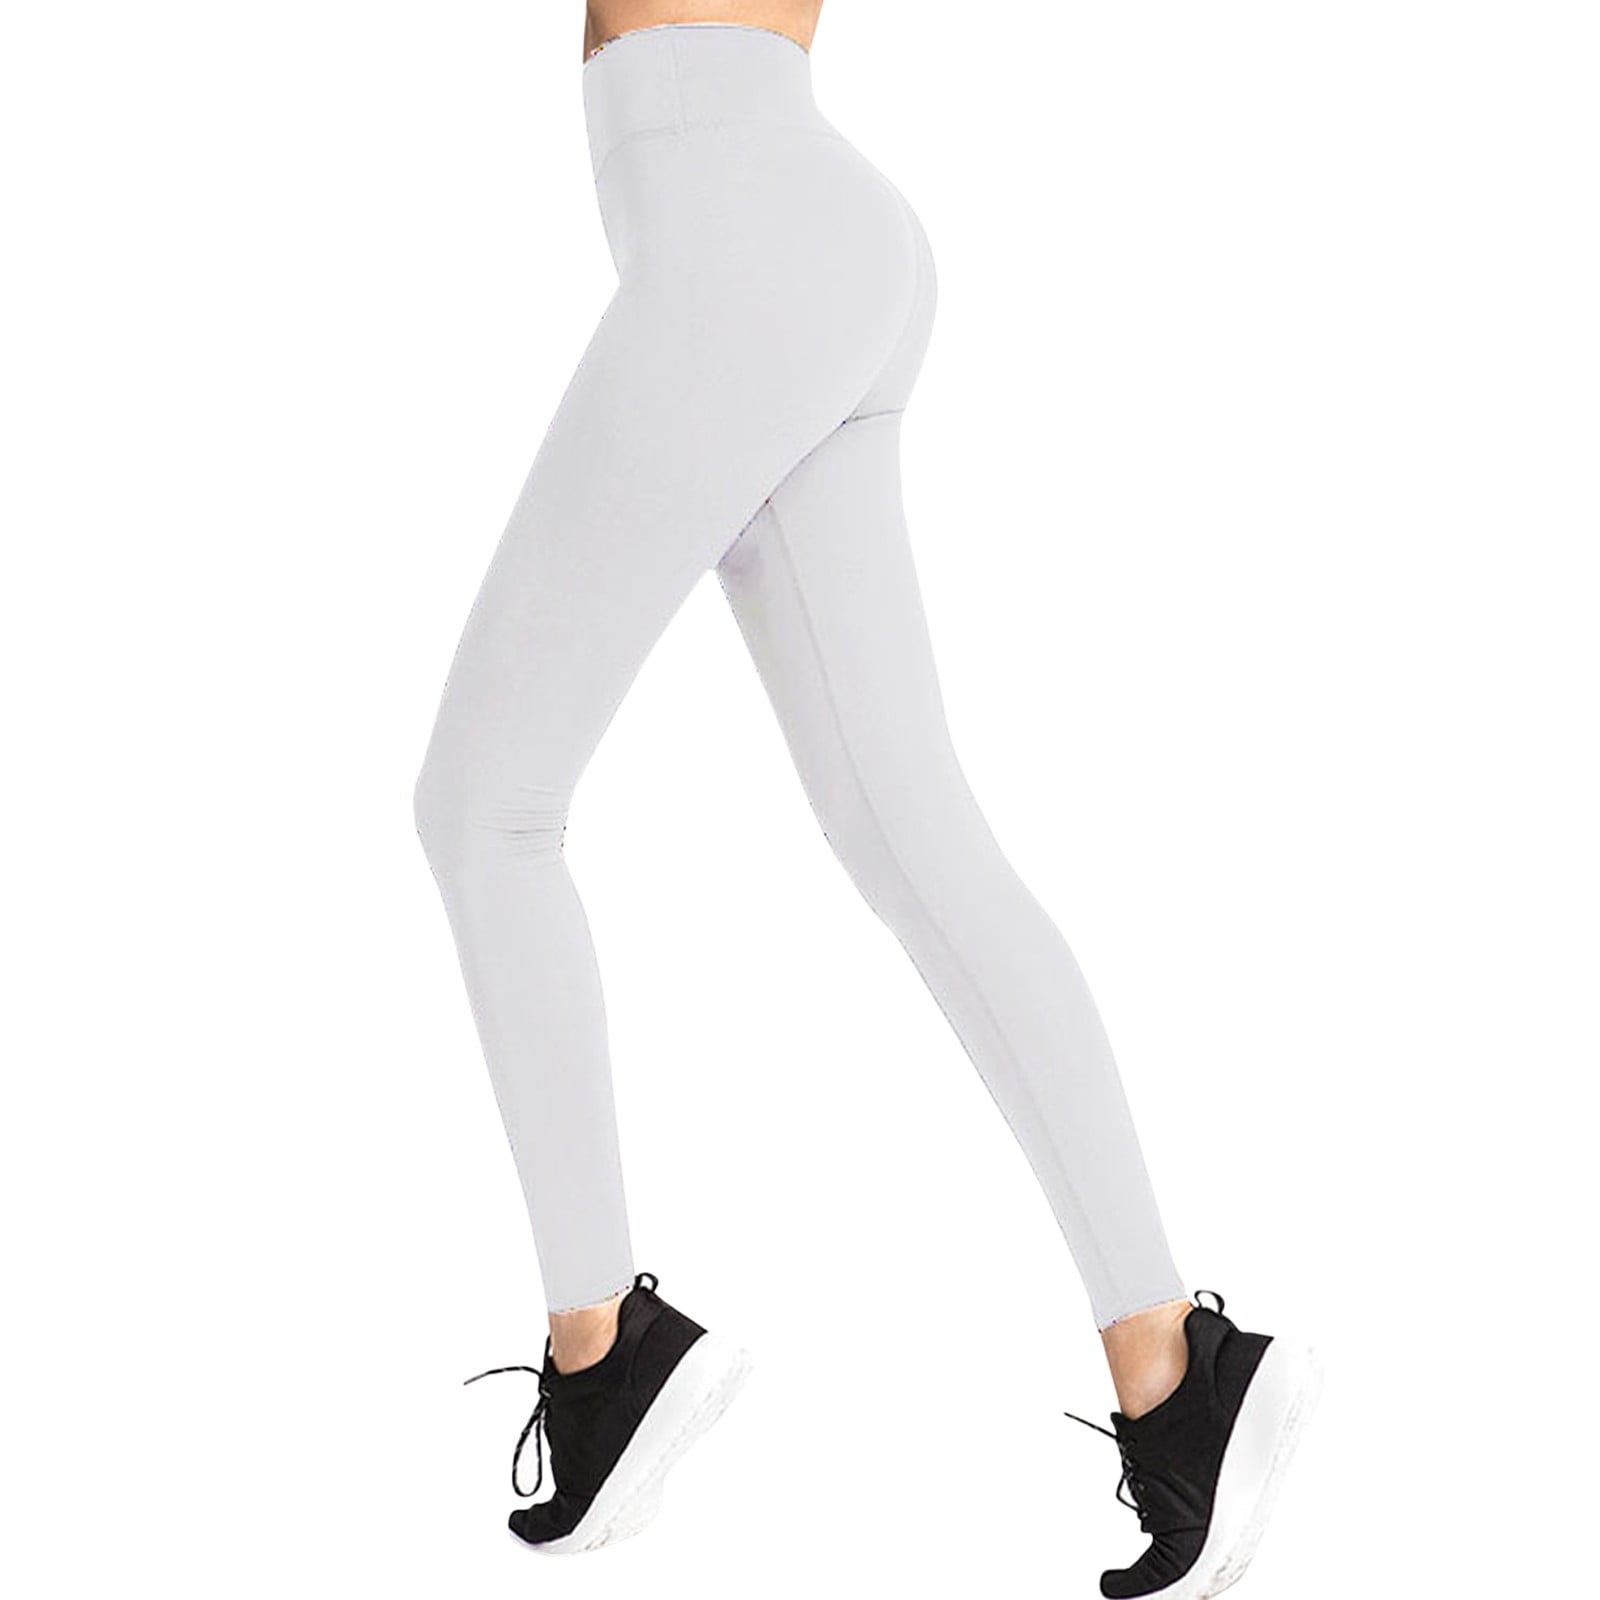 kpoplk Long Yoga Pants For Women Tall,Women's Flare Yoga Pants for Women,  High Waisted Buttery Soft Leggings(White,XL)